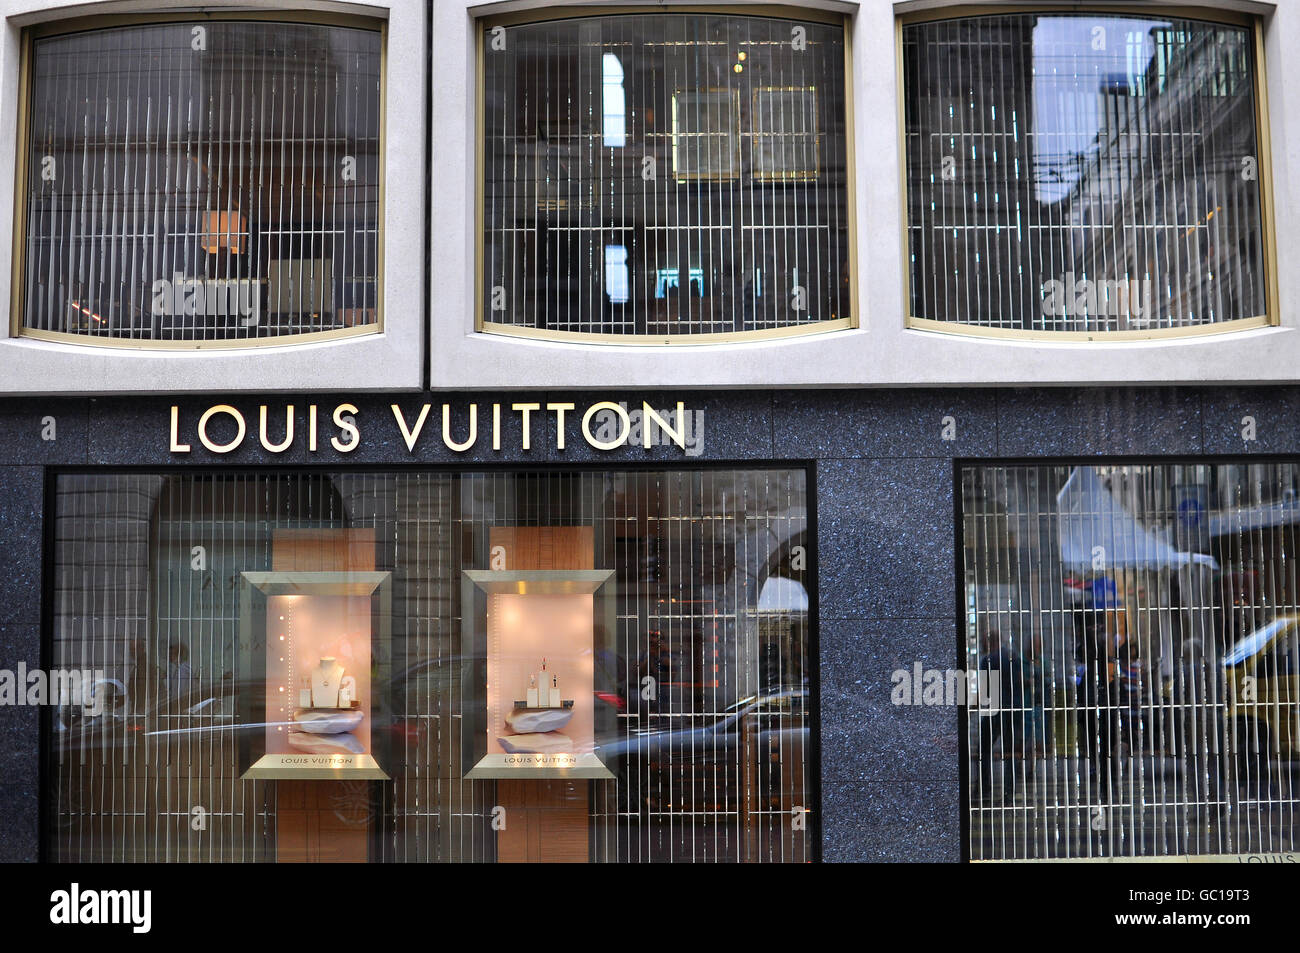 GENEVA, SWITZERLAND - SEPTEMBER 3, 2015: Facade of Louis Vuitton store in the shopping street of Geneva on September 3, 2015. Stock Photo